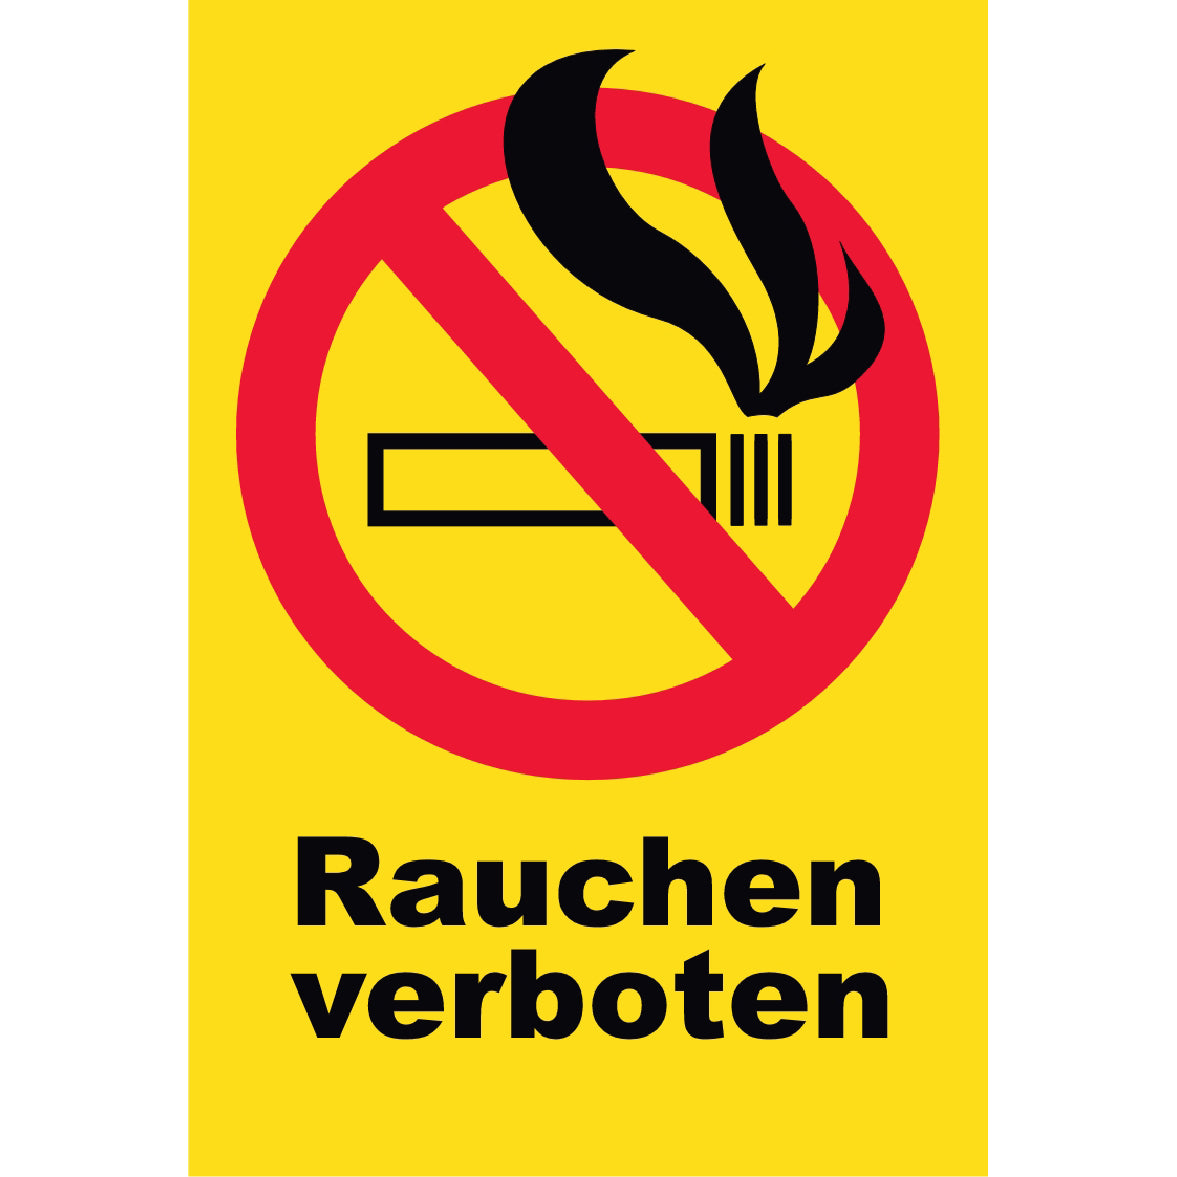 Rauchen verboten Verbots-Kreis Schild